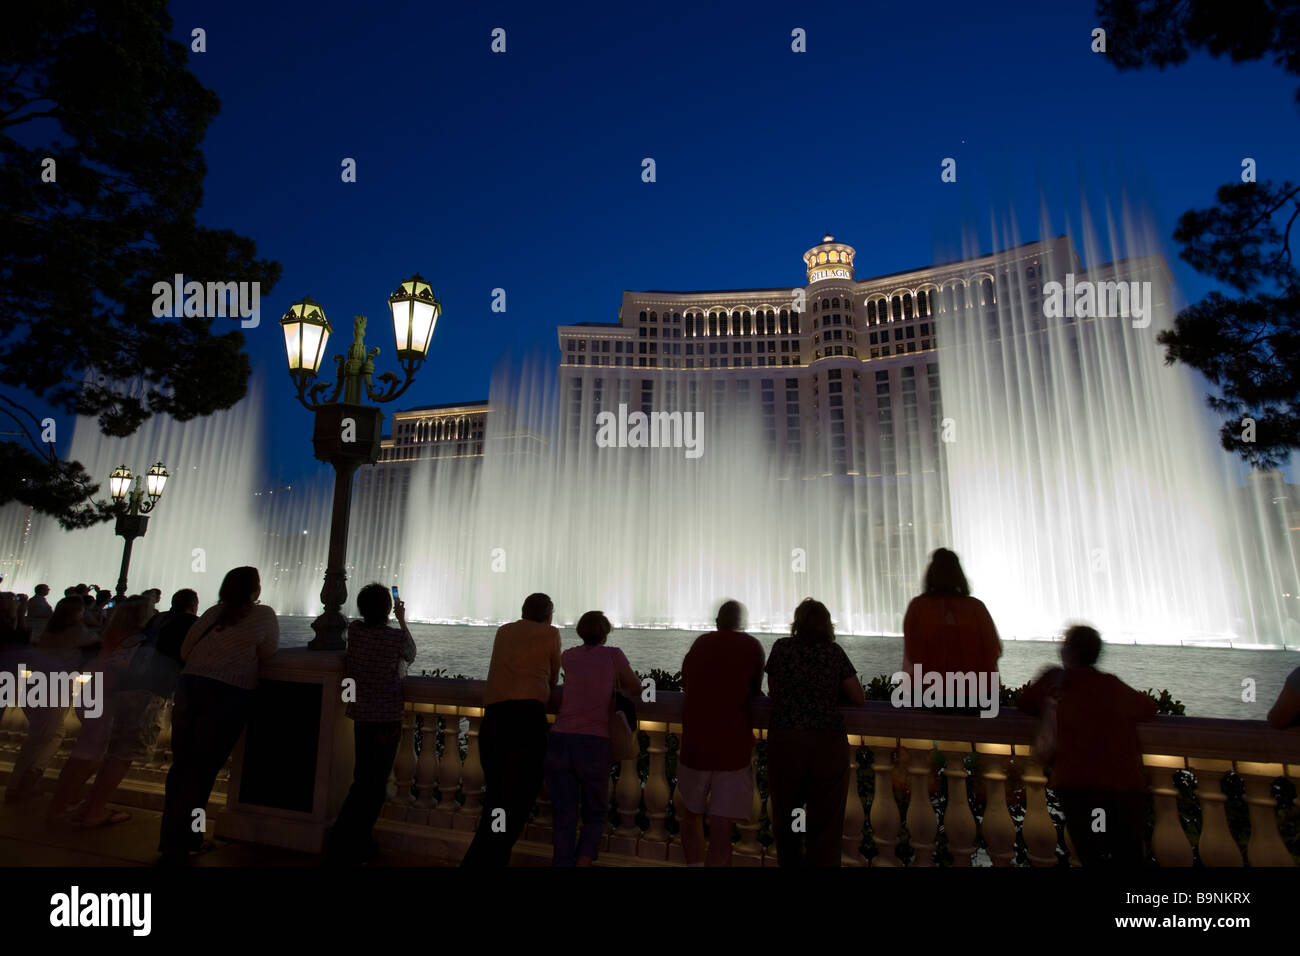 La fontaine d'eau afficher en face de la Bellagio et Césars sur le Strip de Las Vegas Banque D'Images